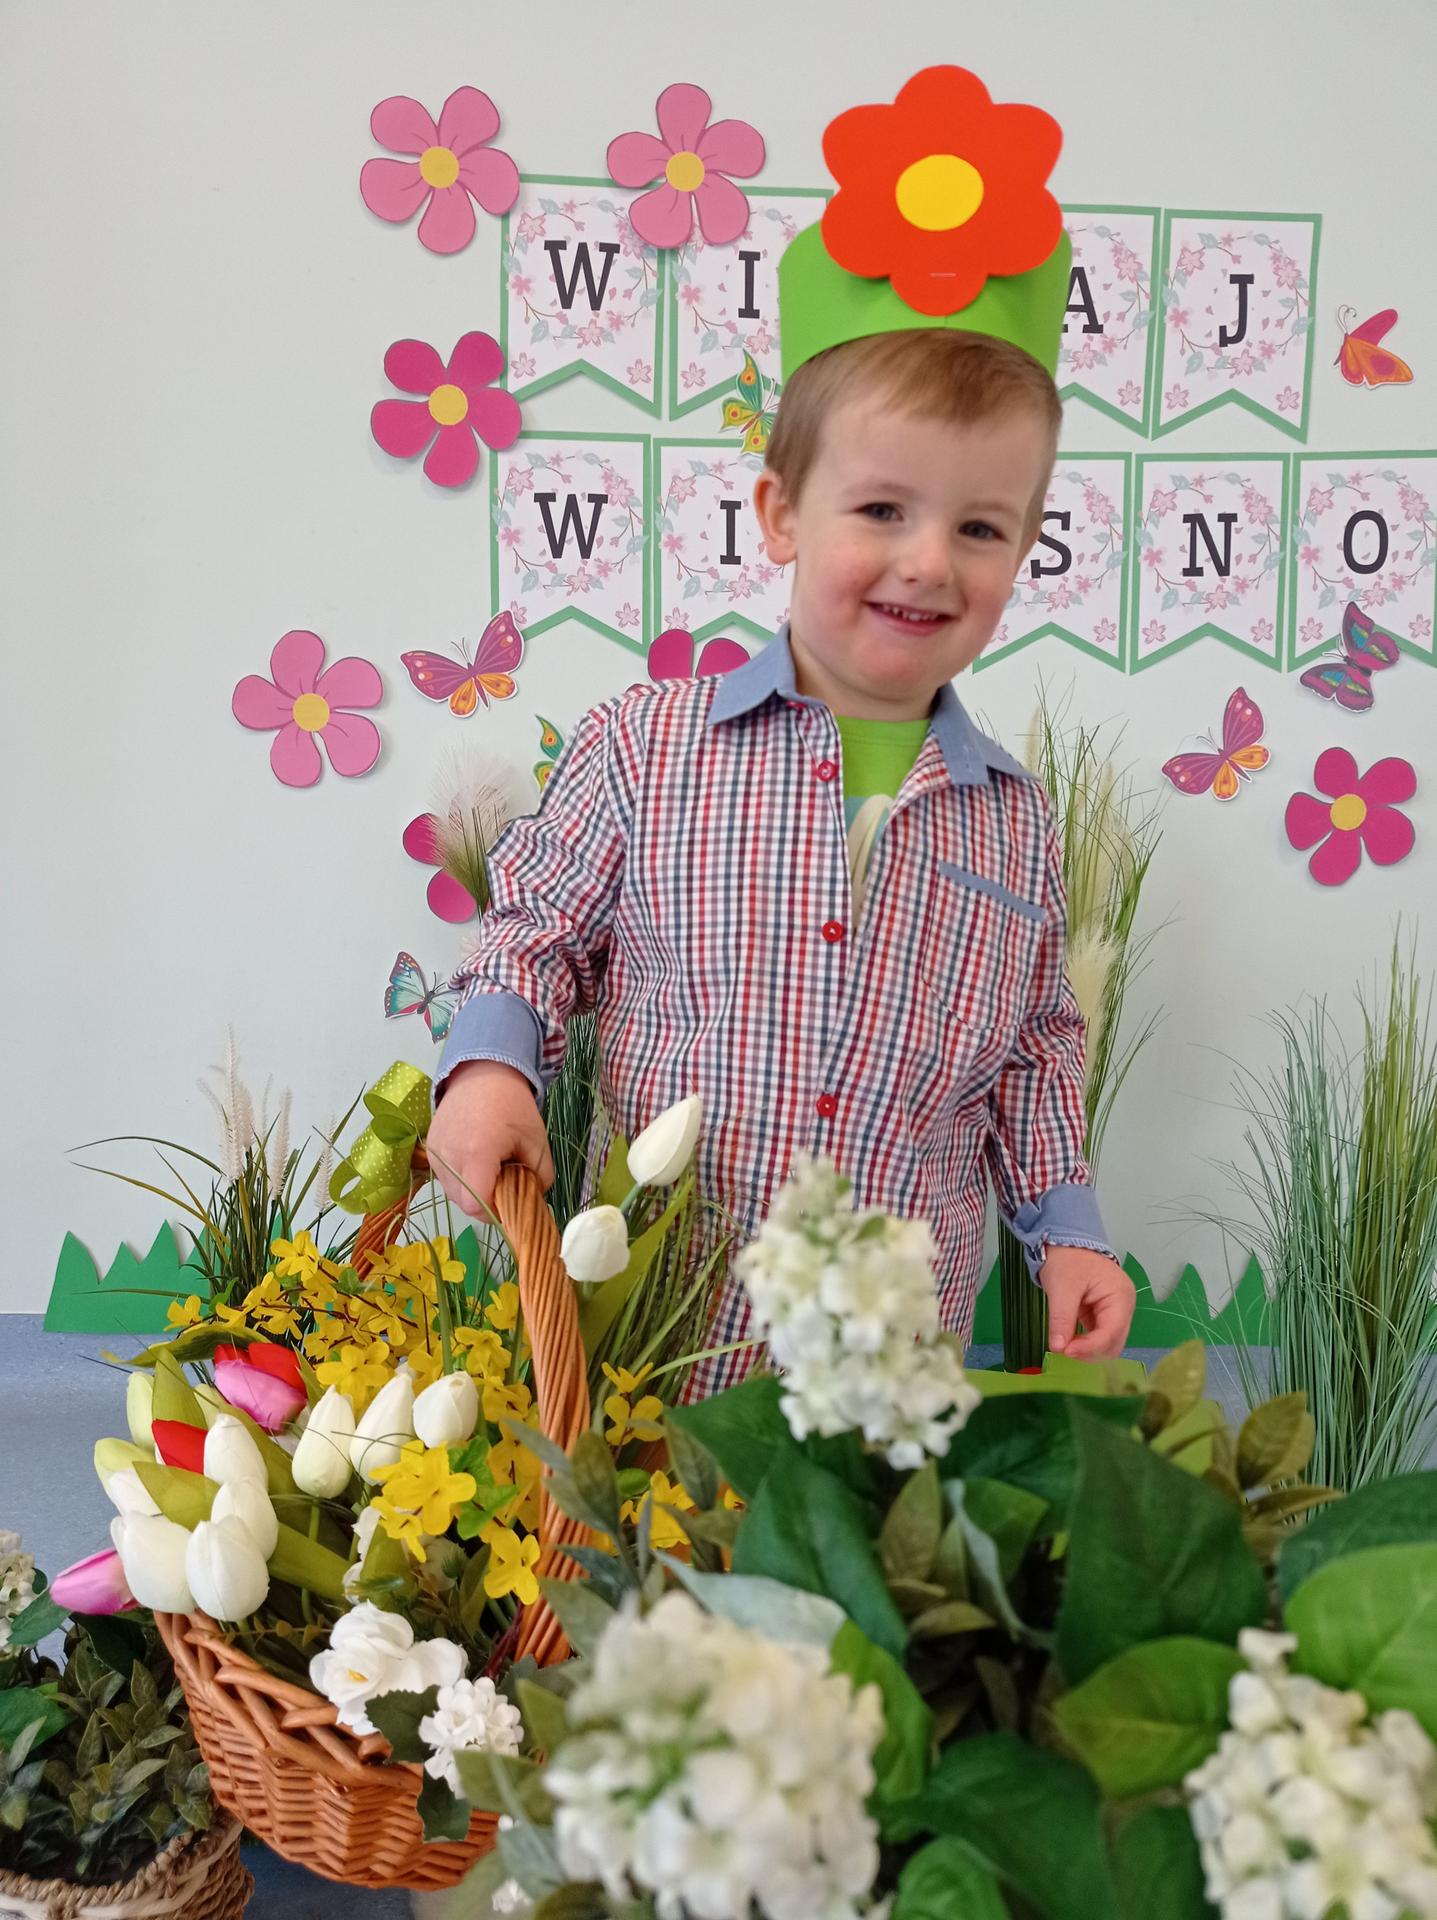 Na zdjęciu widać chłopca w wieku ok 3 lat. Chłopiec jest uśmiechnięty. Na głowie ma opaskę z kwiatkiem. W ręku trzyma kosz z kwiatami. Za nim widać napis WITAJ WIOSNO.